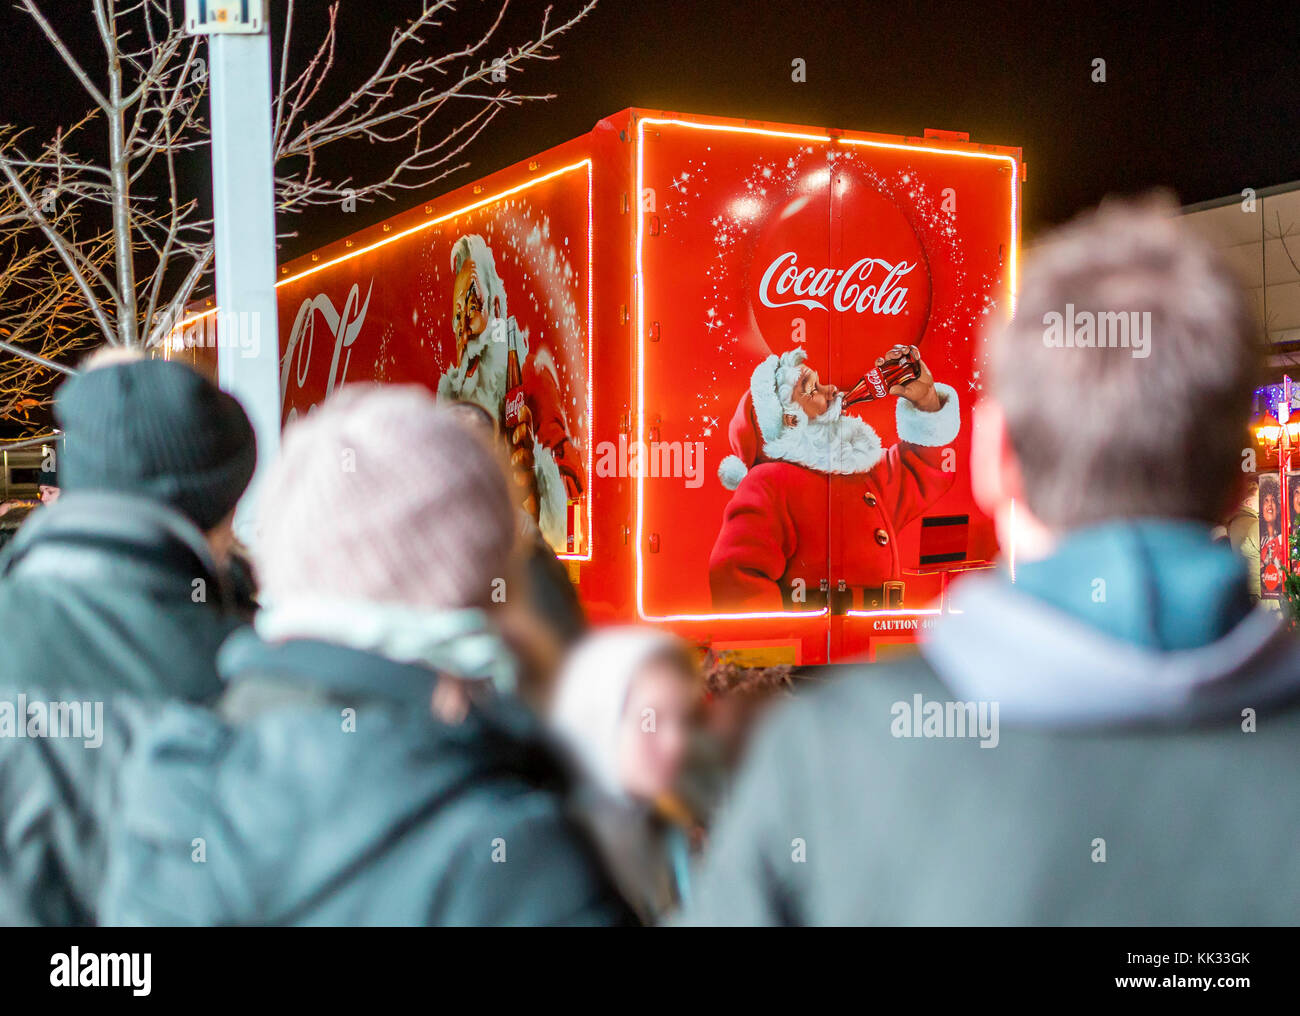 Foule devant de Coca-Cola holidays are coming camion de Noël au Royaume-Uni représentant traditionnel du Père Noël ou Père Noël tenant une bouteille de CO Banque D'Images